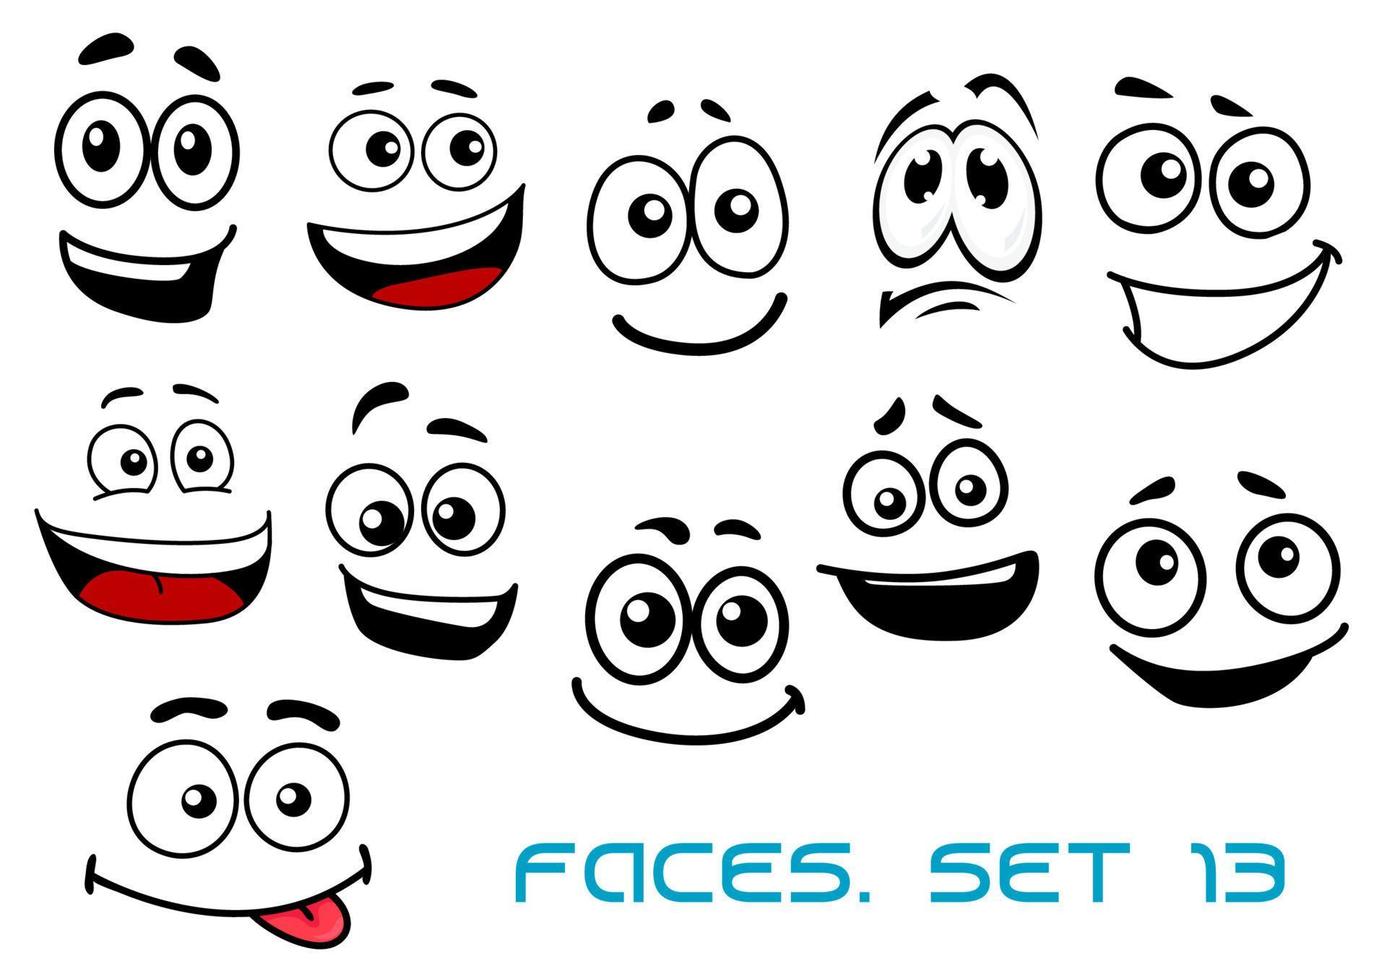 caras de dibujos animados con varias emociones 11521342 Vector en Vecteezy